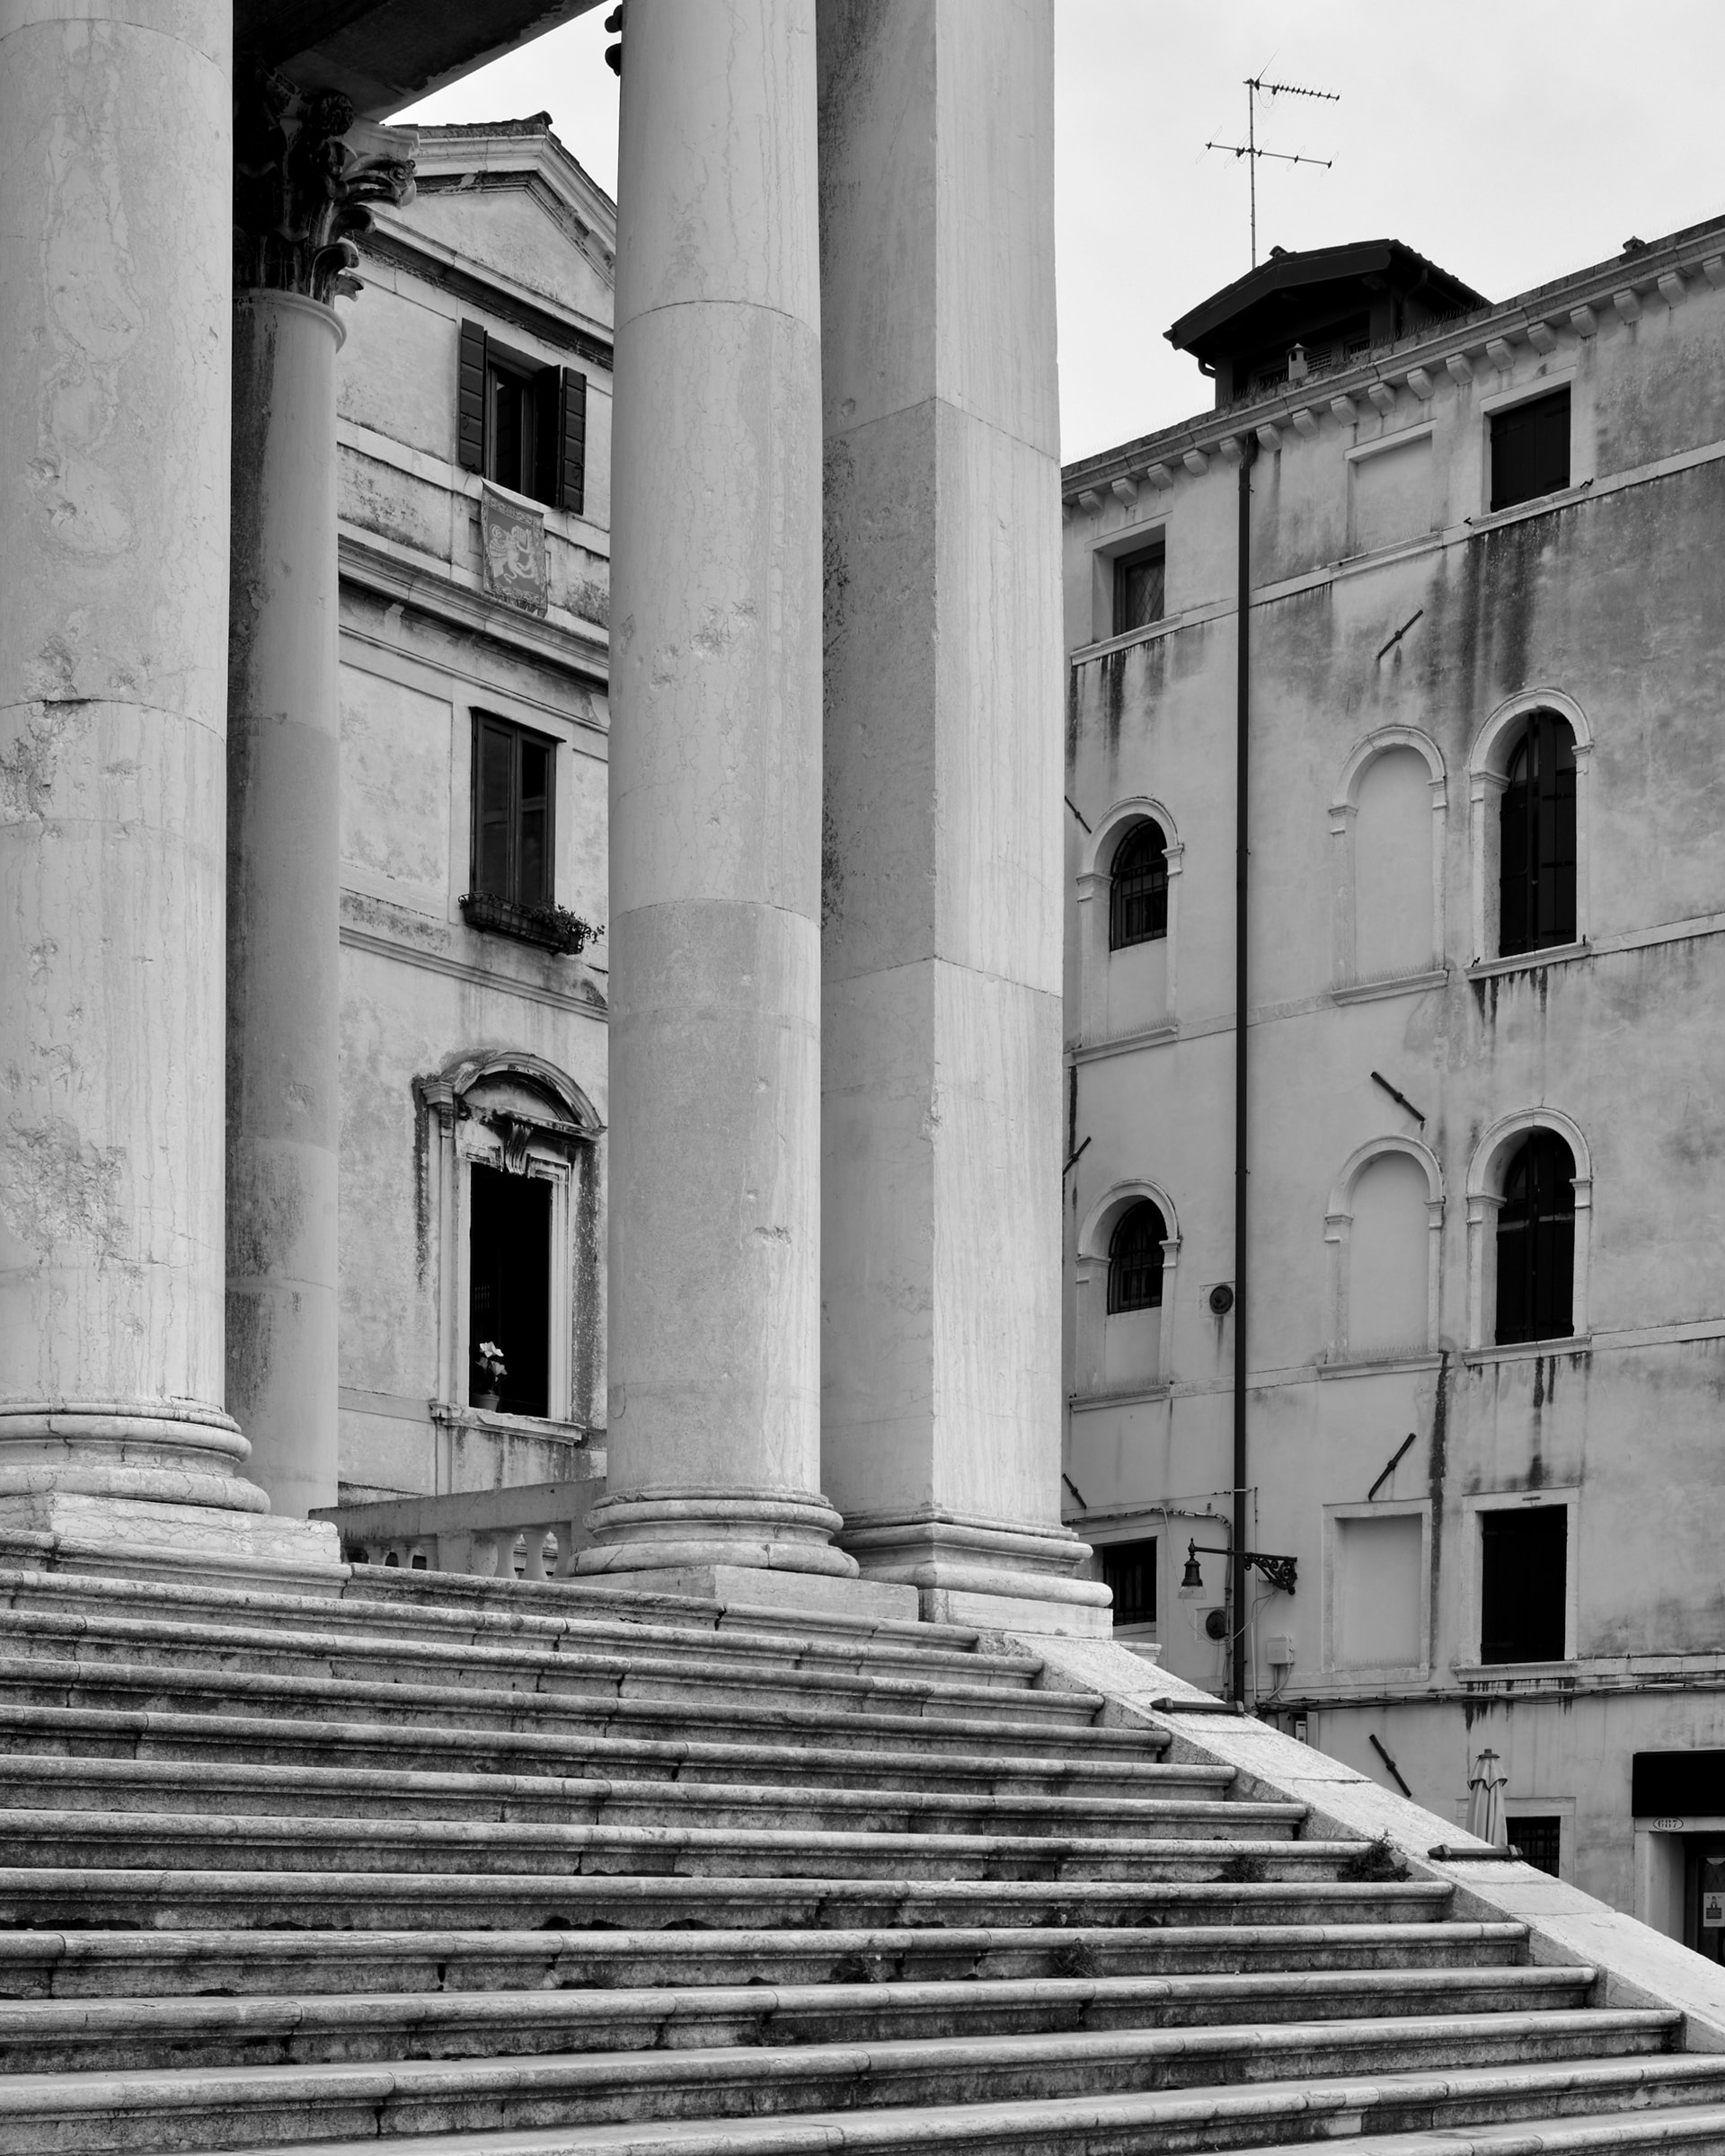 Santa Croce, Fondamenta San Simeon Picolo, 2021. Venice Urban Photo Project / Mario Peliti